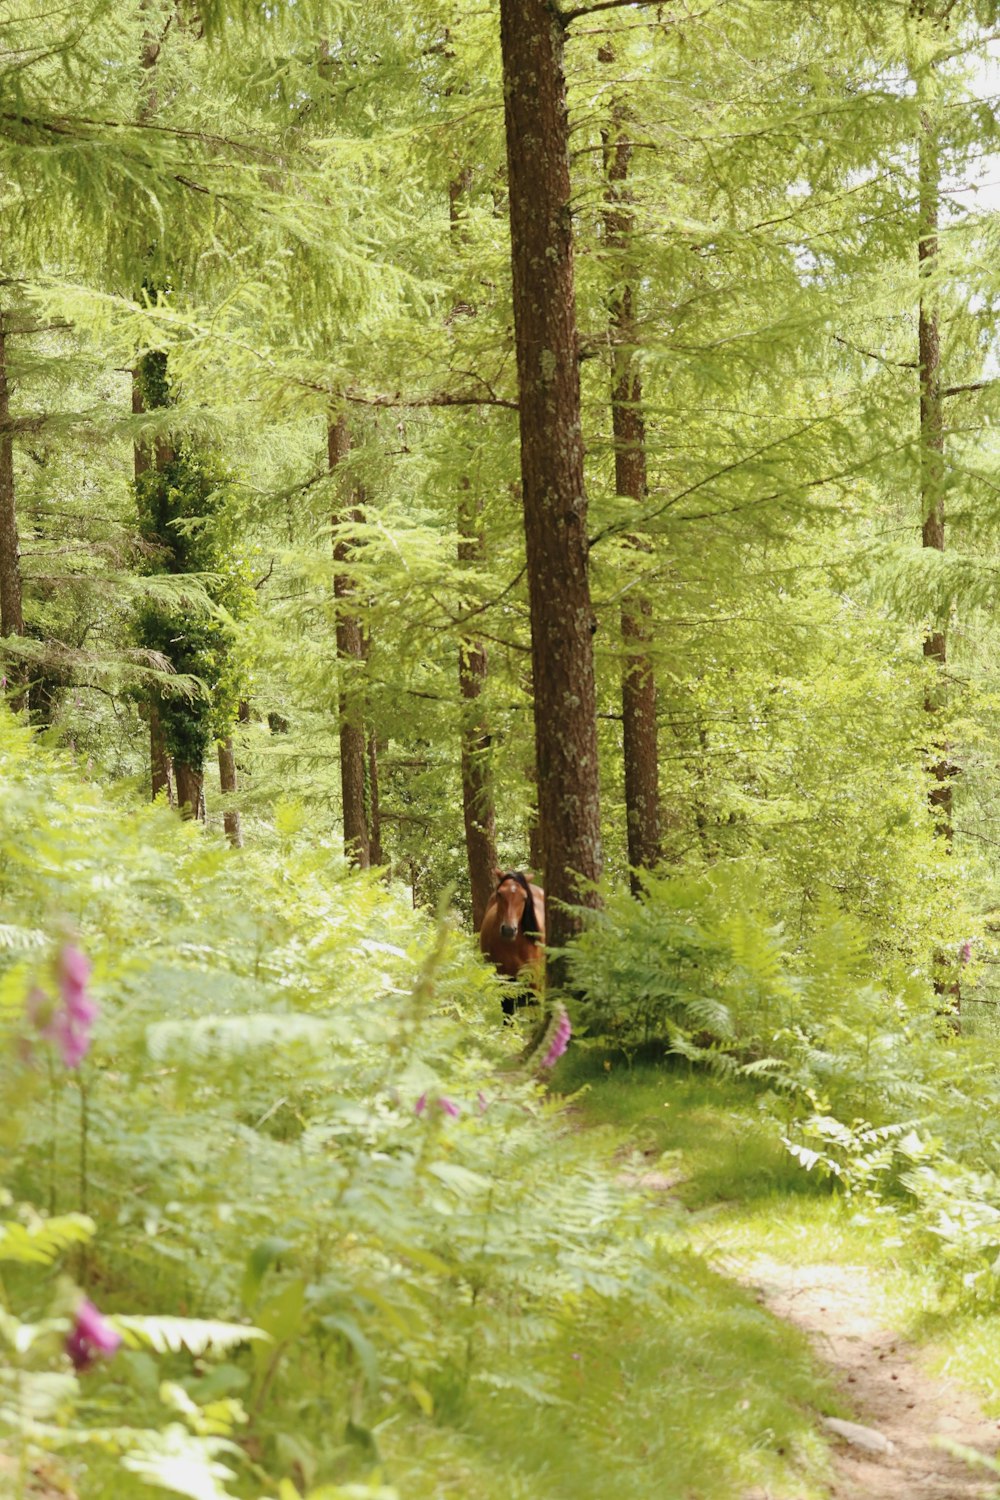 緑豊かな森の中を歩くクマ